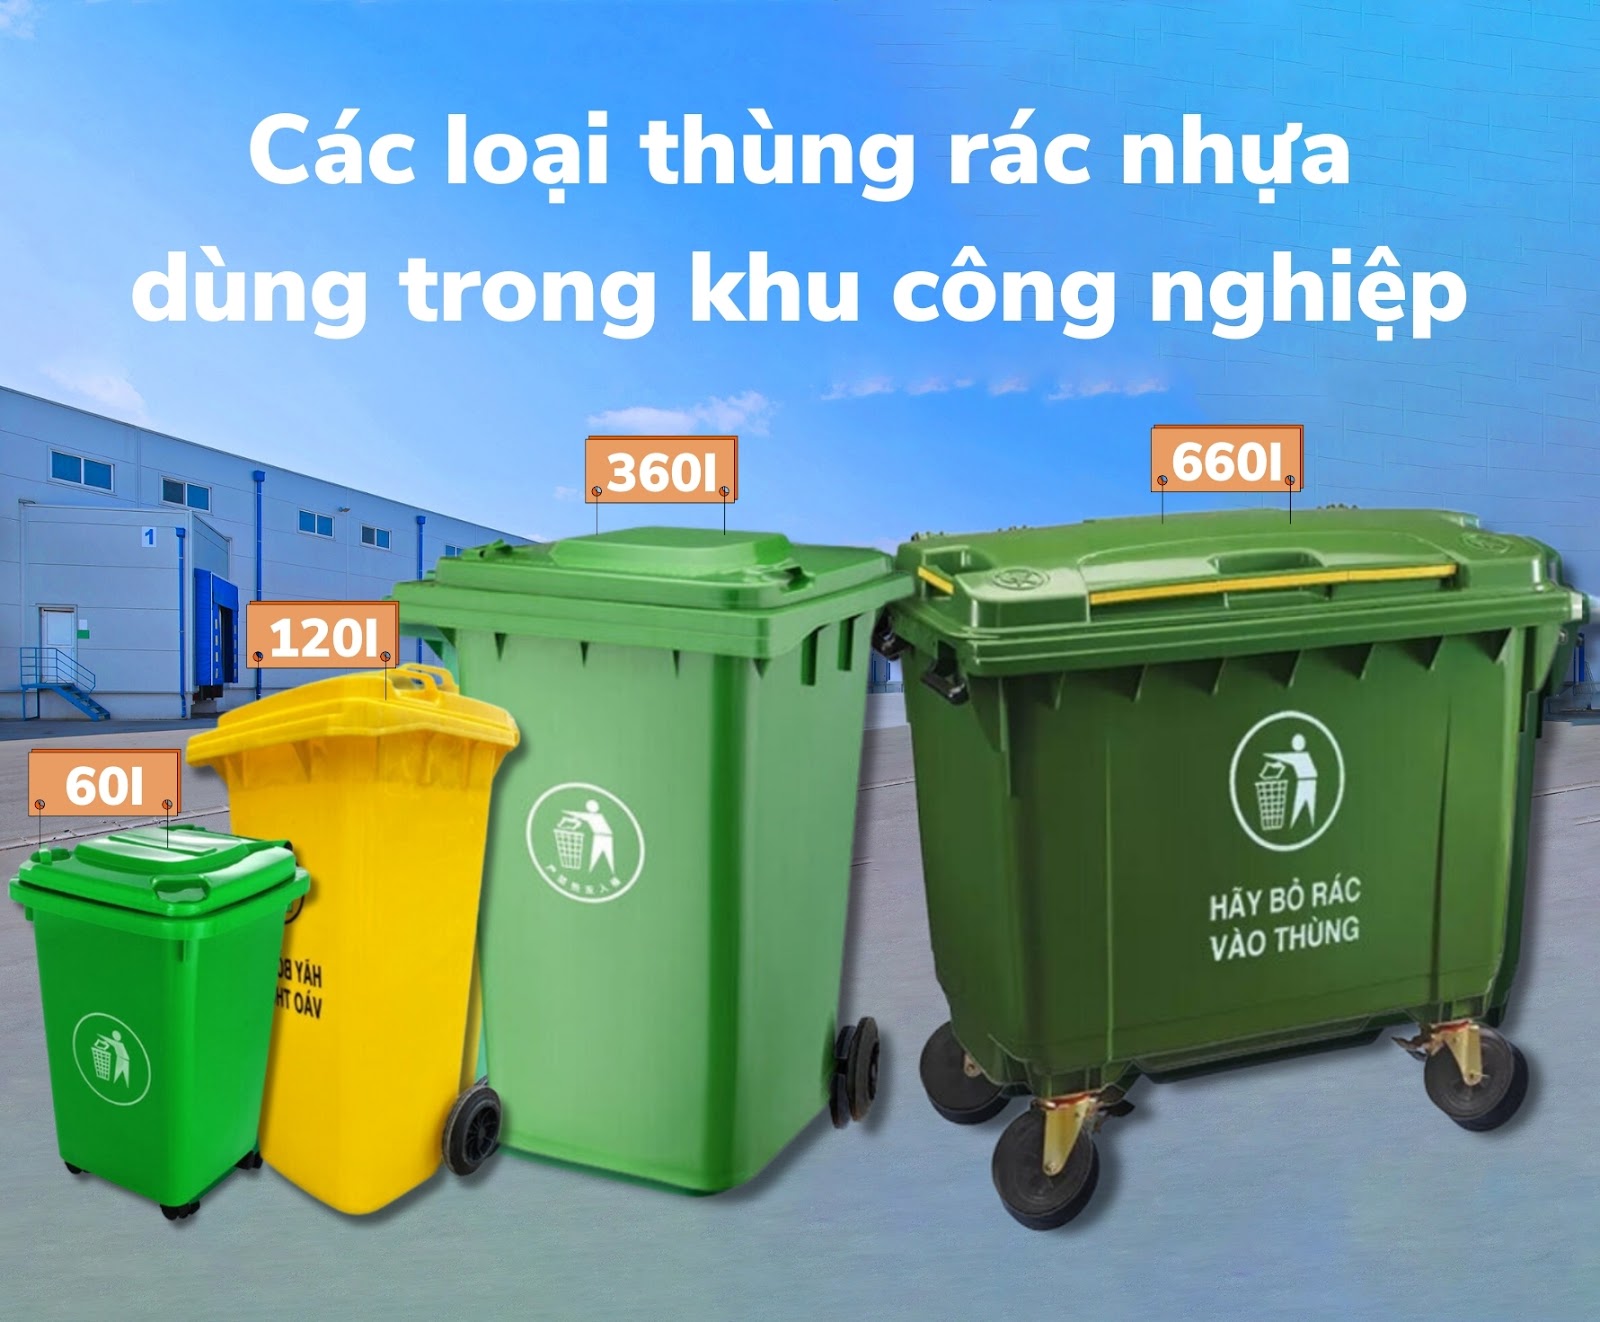 Các loại thùng rác nhựa dùng trong khu công nghiệp